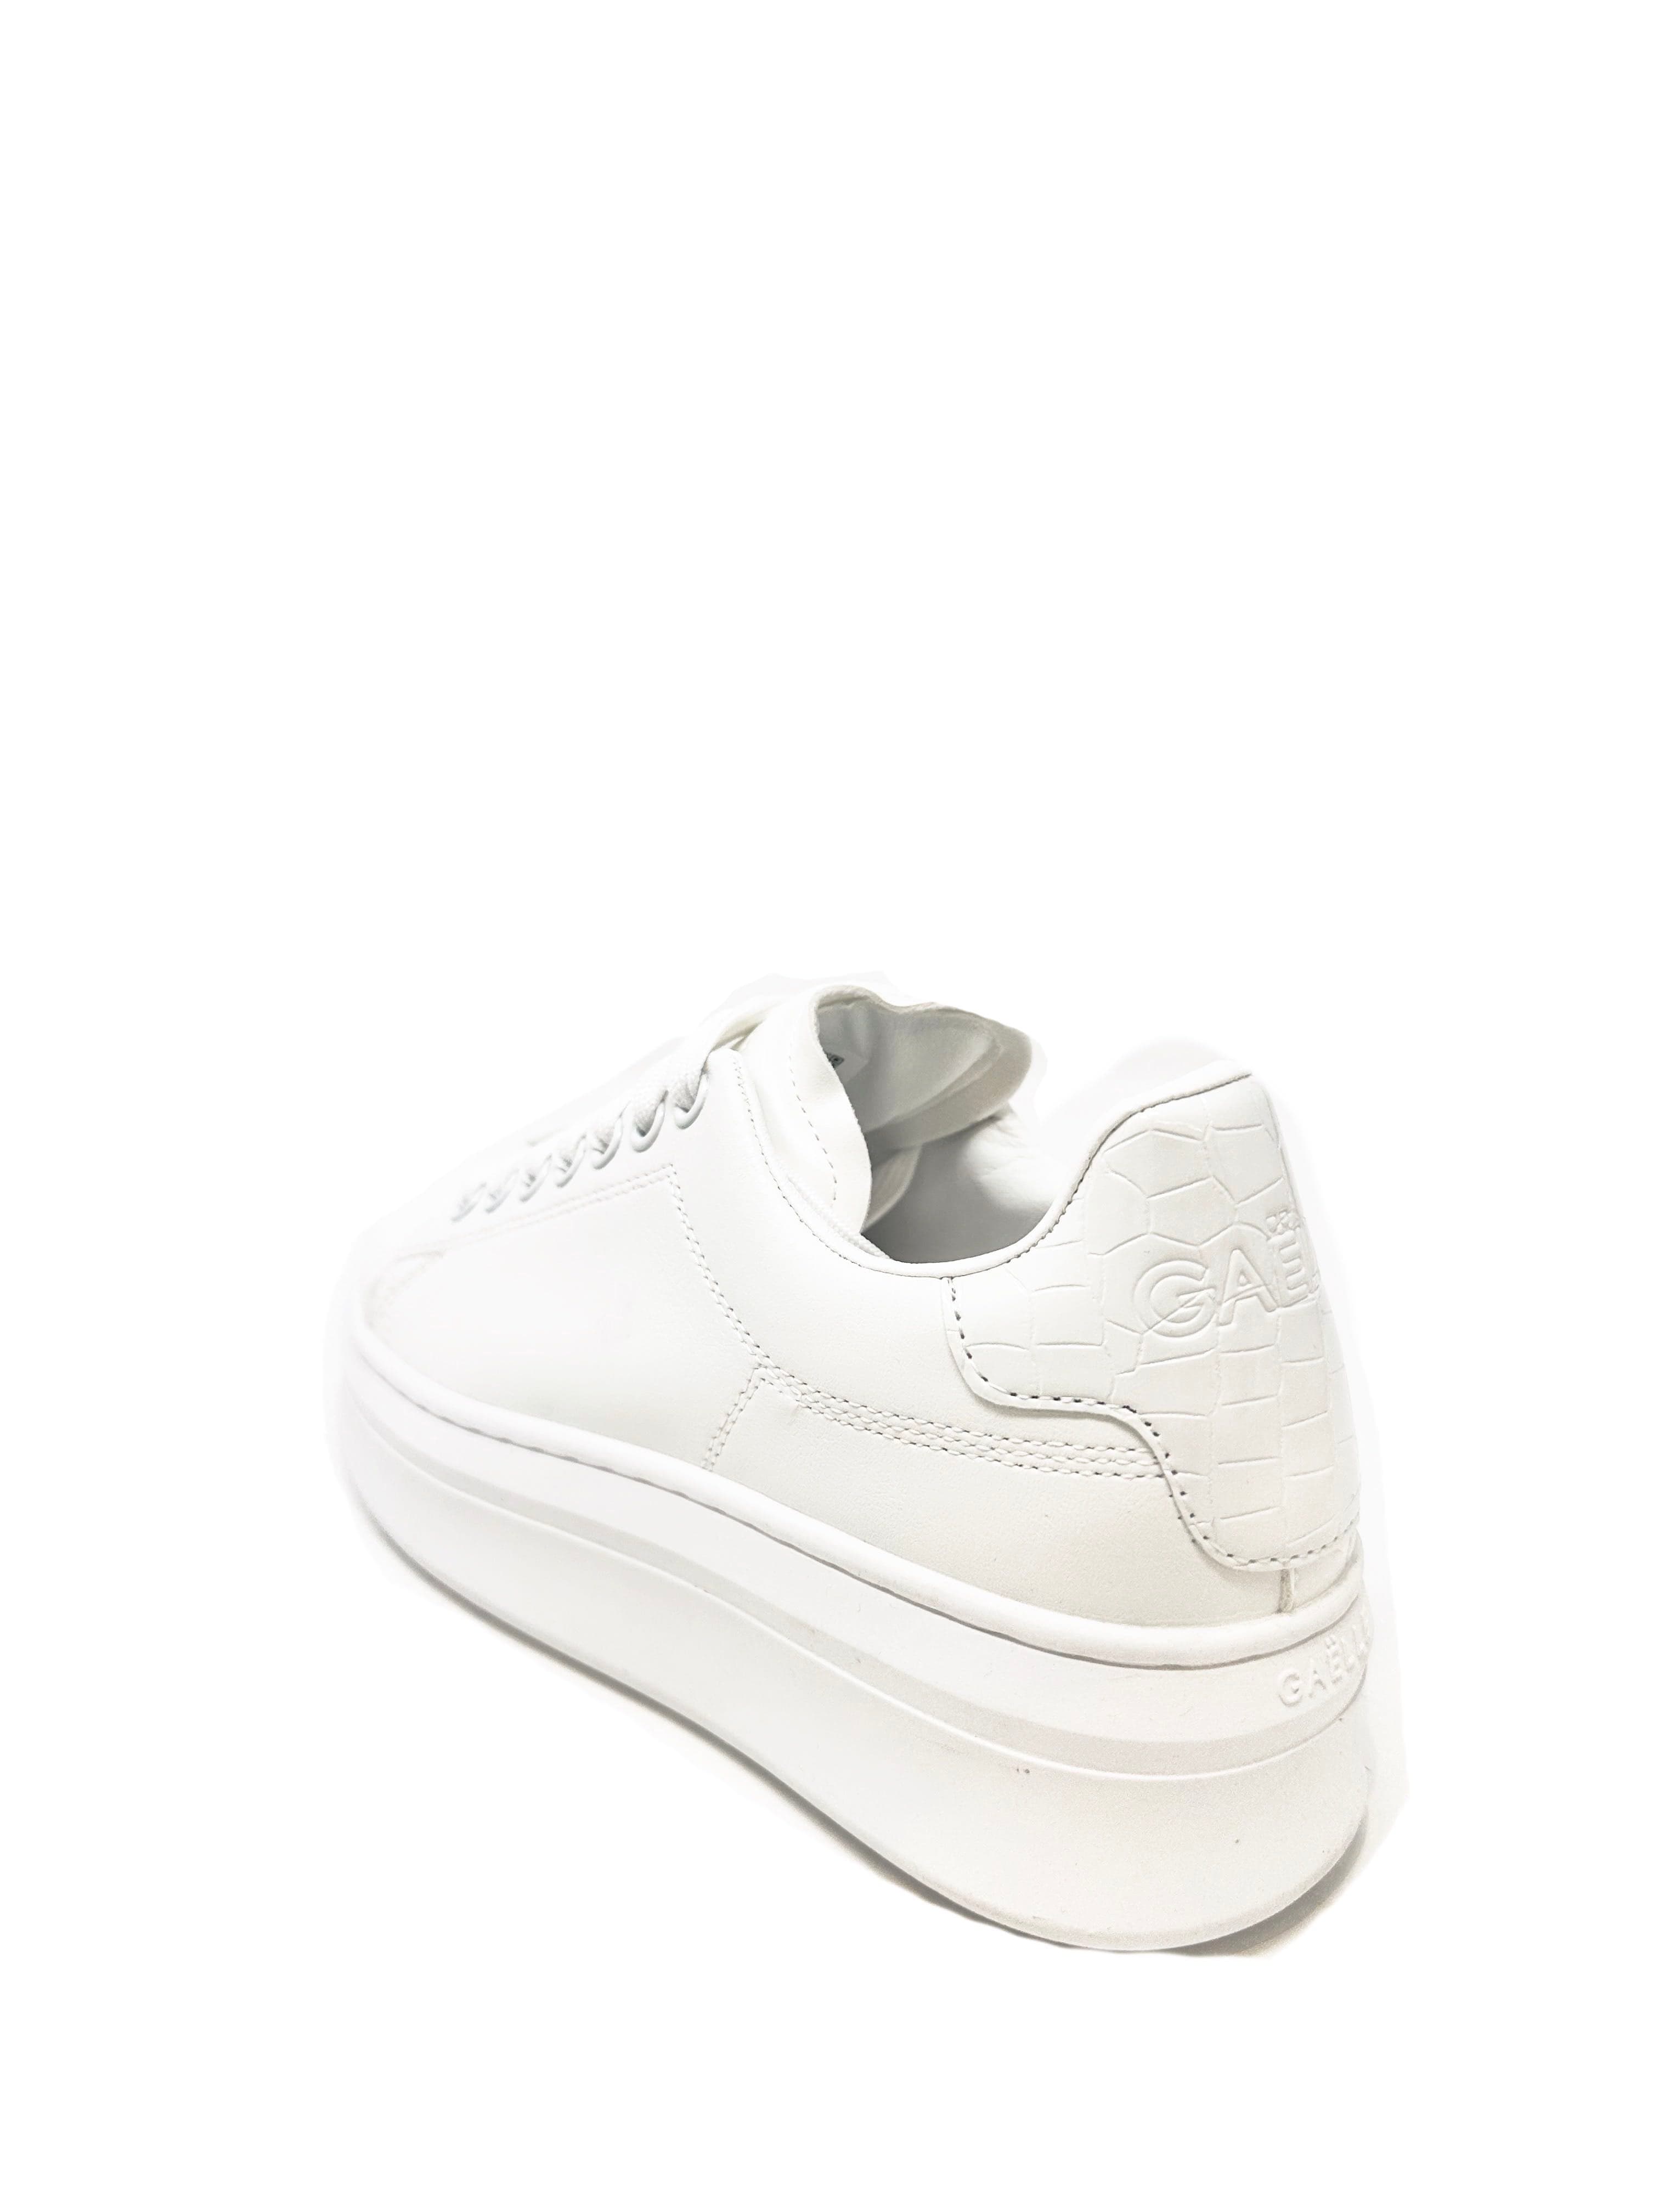 Gaelle sneakers donna bianca con tallone effetto cocco verniciato bianco e acces